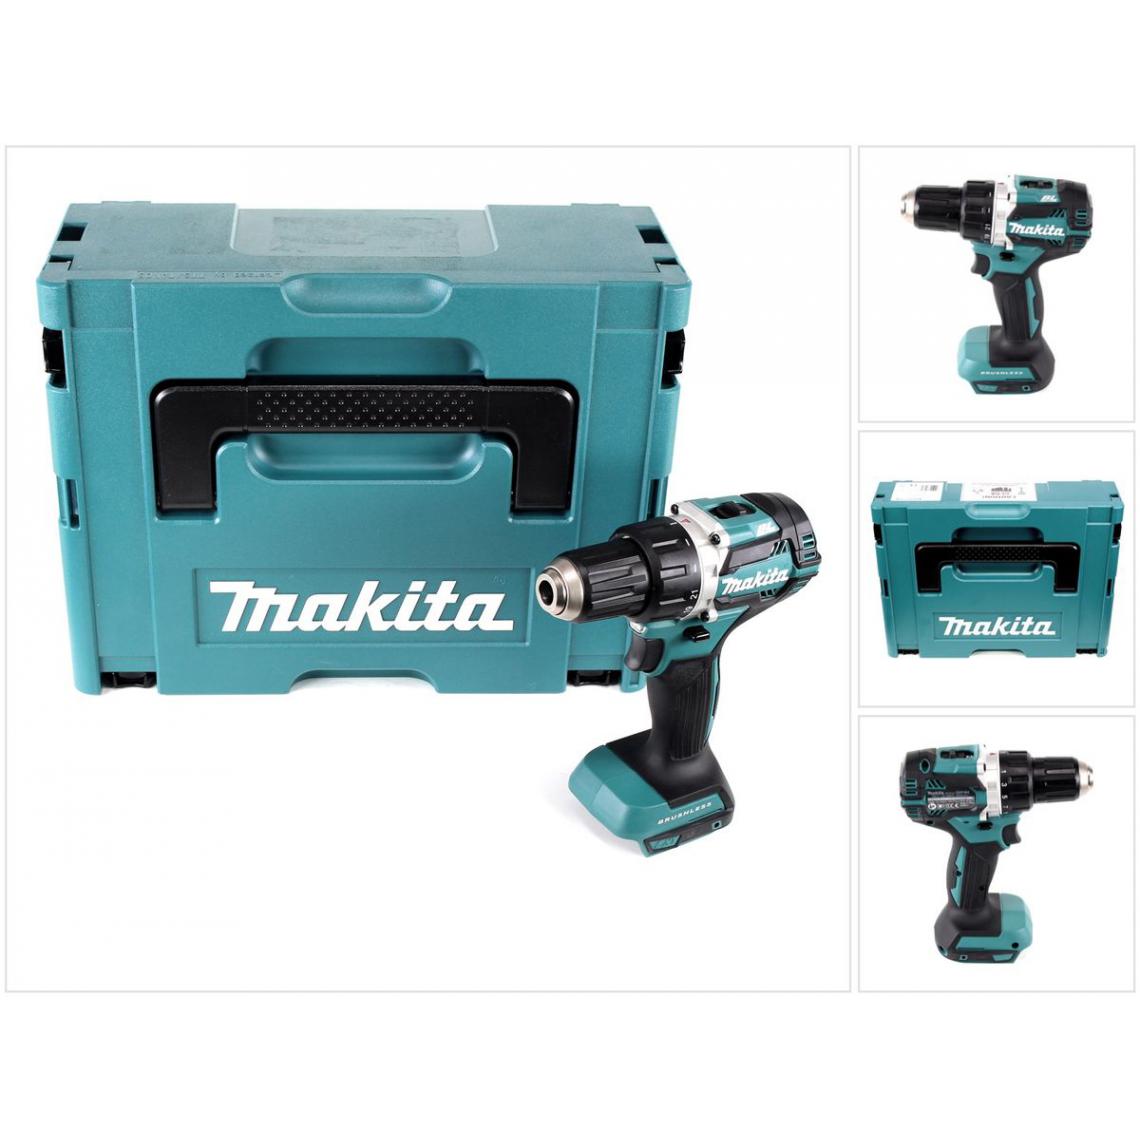 Makita - Makita DDF 484 ZJ 18 V Perceuse visseuse sans fil Brushless 54 Nm avec boîtier Makpac - sans Batteries, ni Chargeur - Perceuses, visseuses sans fil